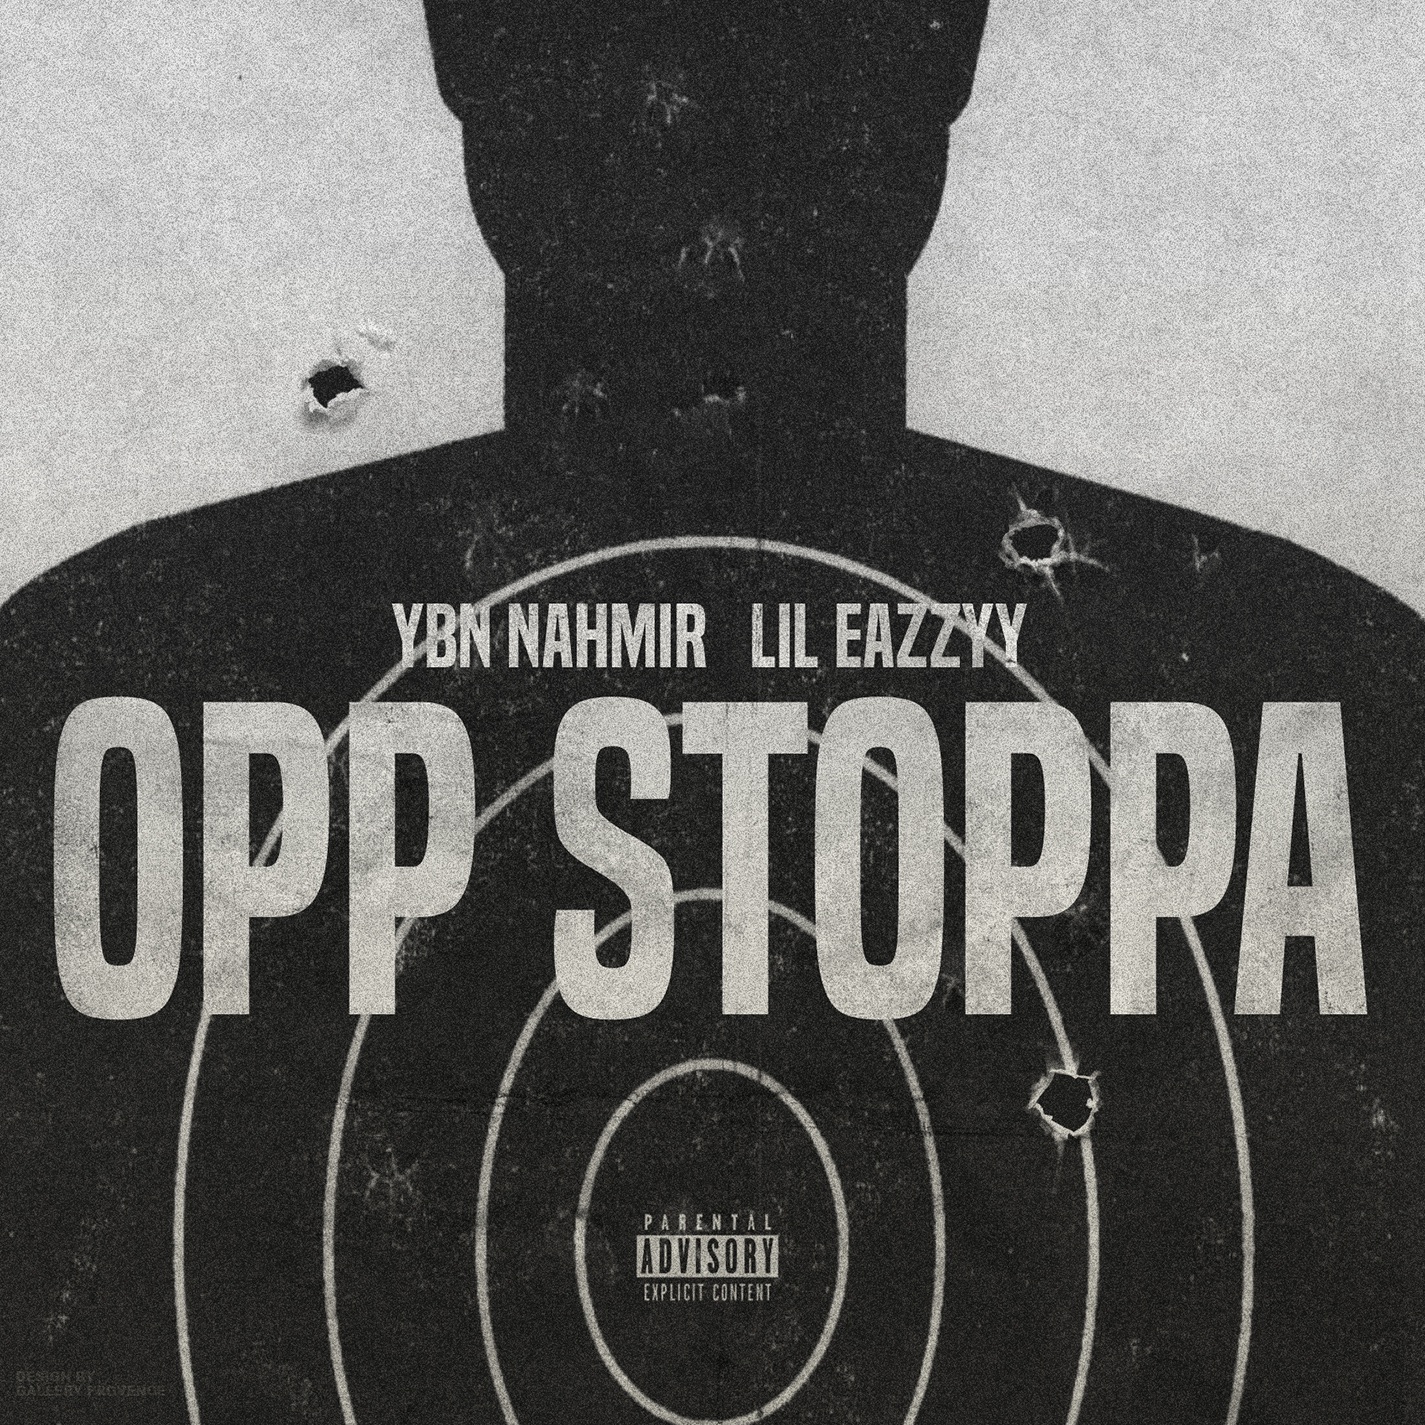 YBN Nahmir - Opp Stoppa (feat. Lil Eazzyy) - Single